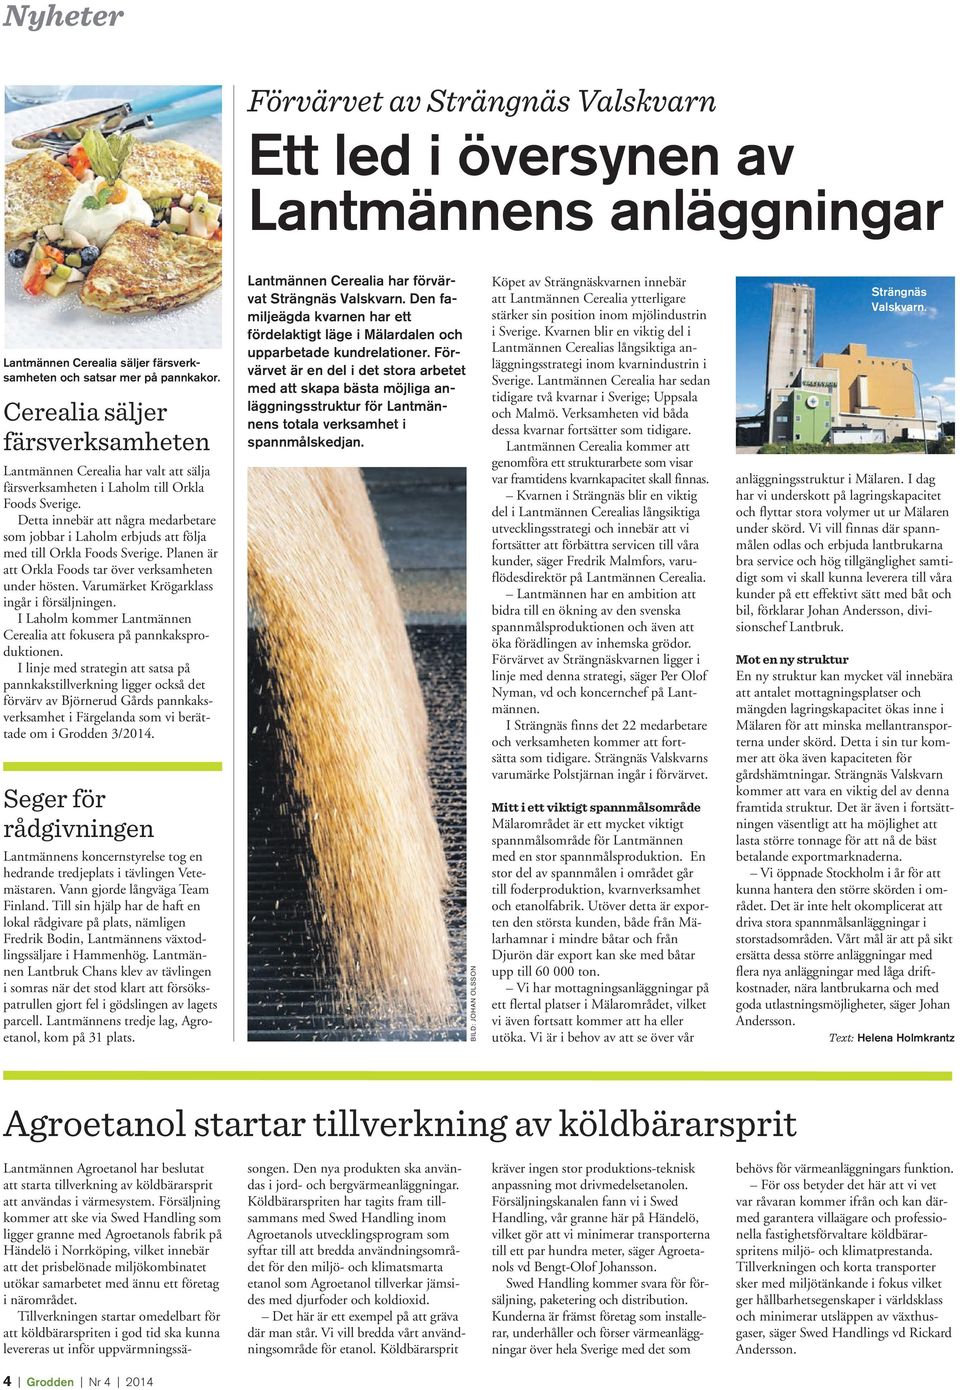 Detta innebär att några medarbetare som jobbar i Laholm erbjuds att följa med till Orkla Foods Sverige. Planen är att Orkla Foods tar över verksamheten under hösten.